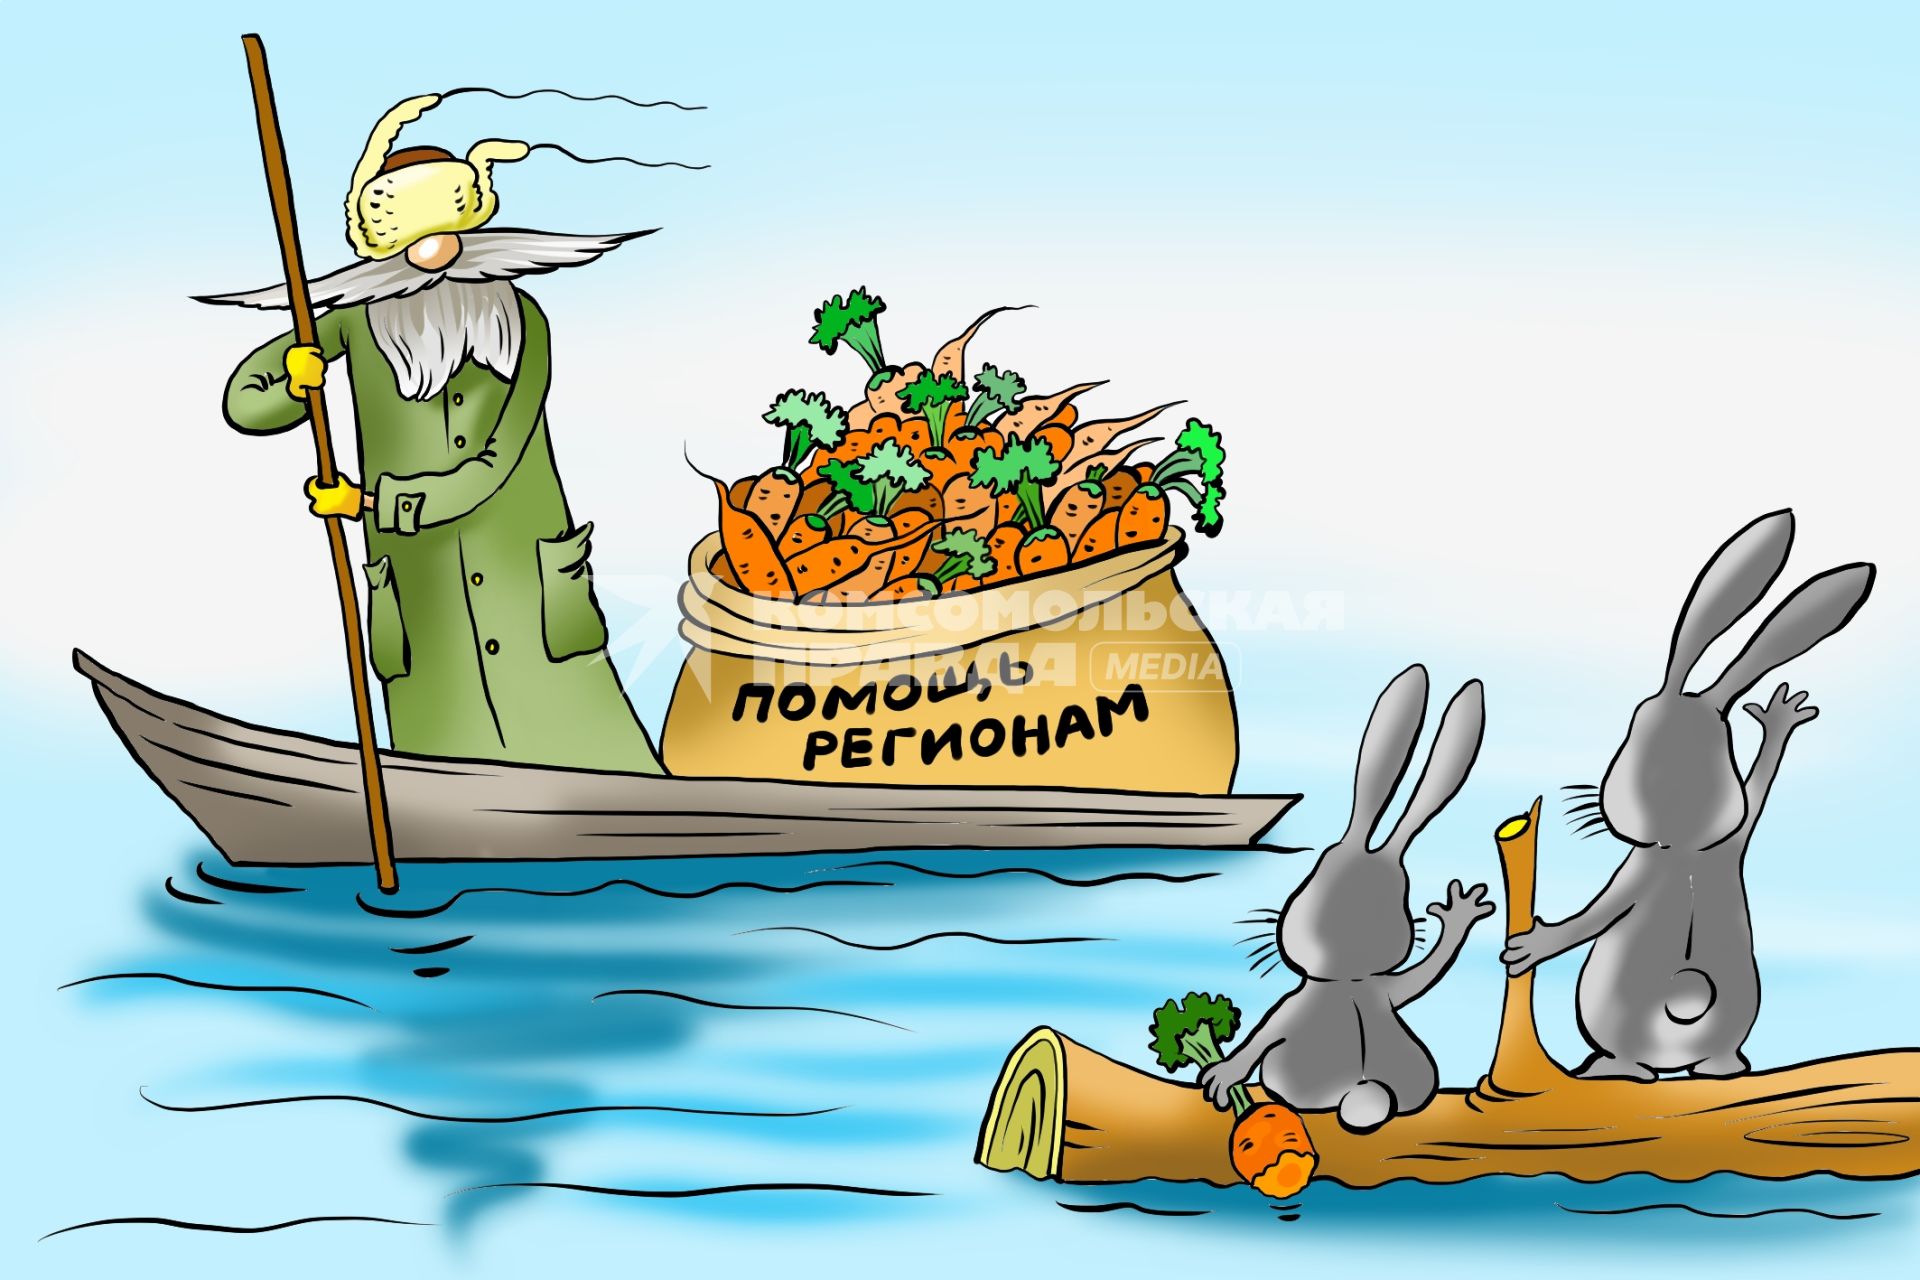 Карикатура на тему помощи регионам.